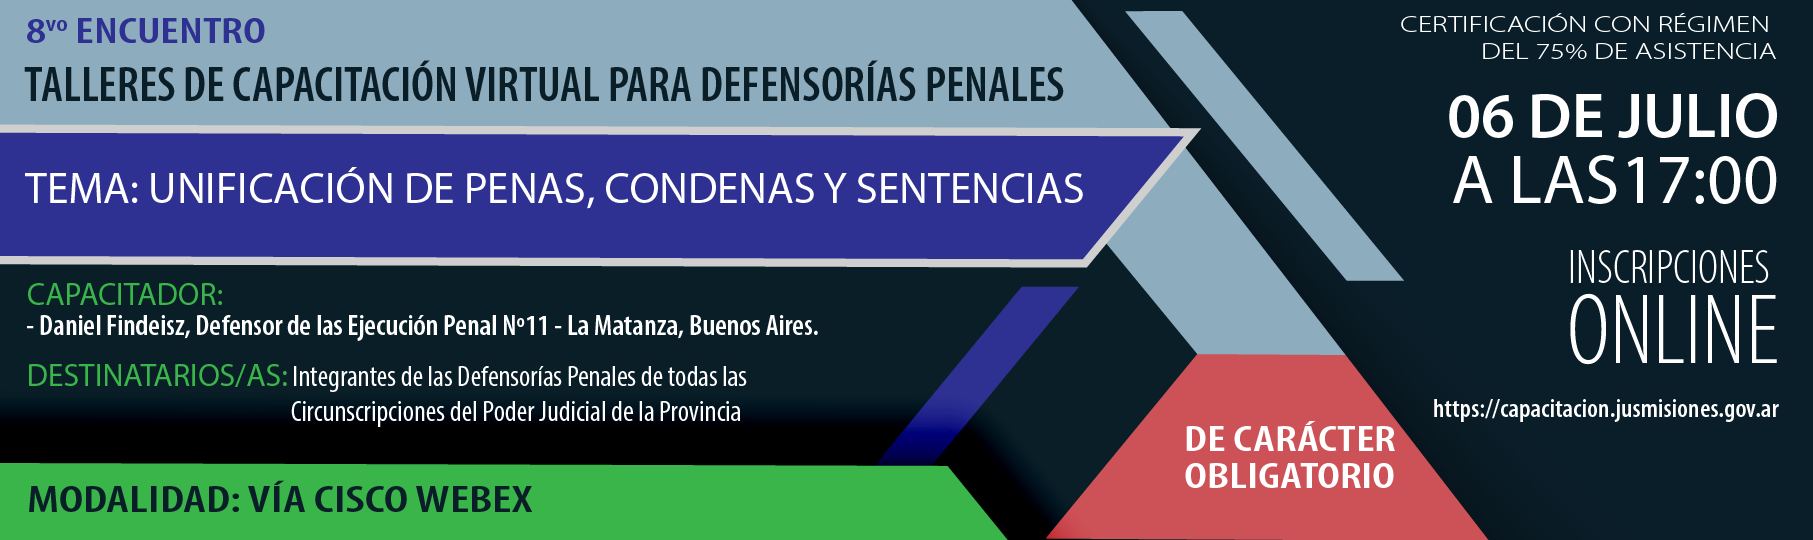 P8_Talleres_de_cap_virtual_para_Defensoras_penales-01